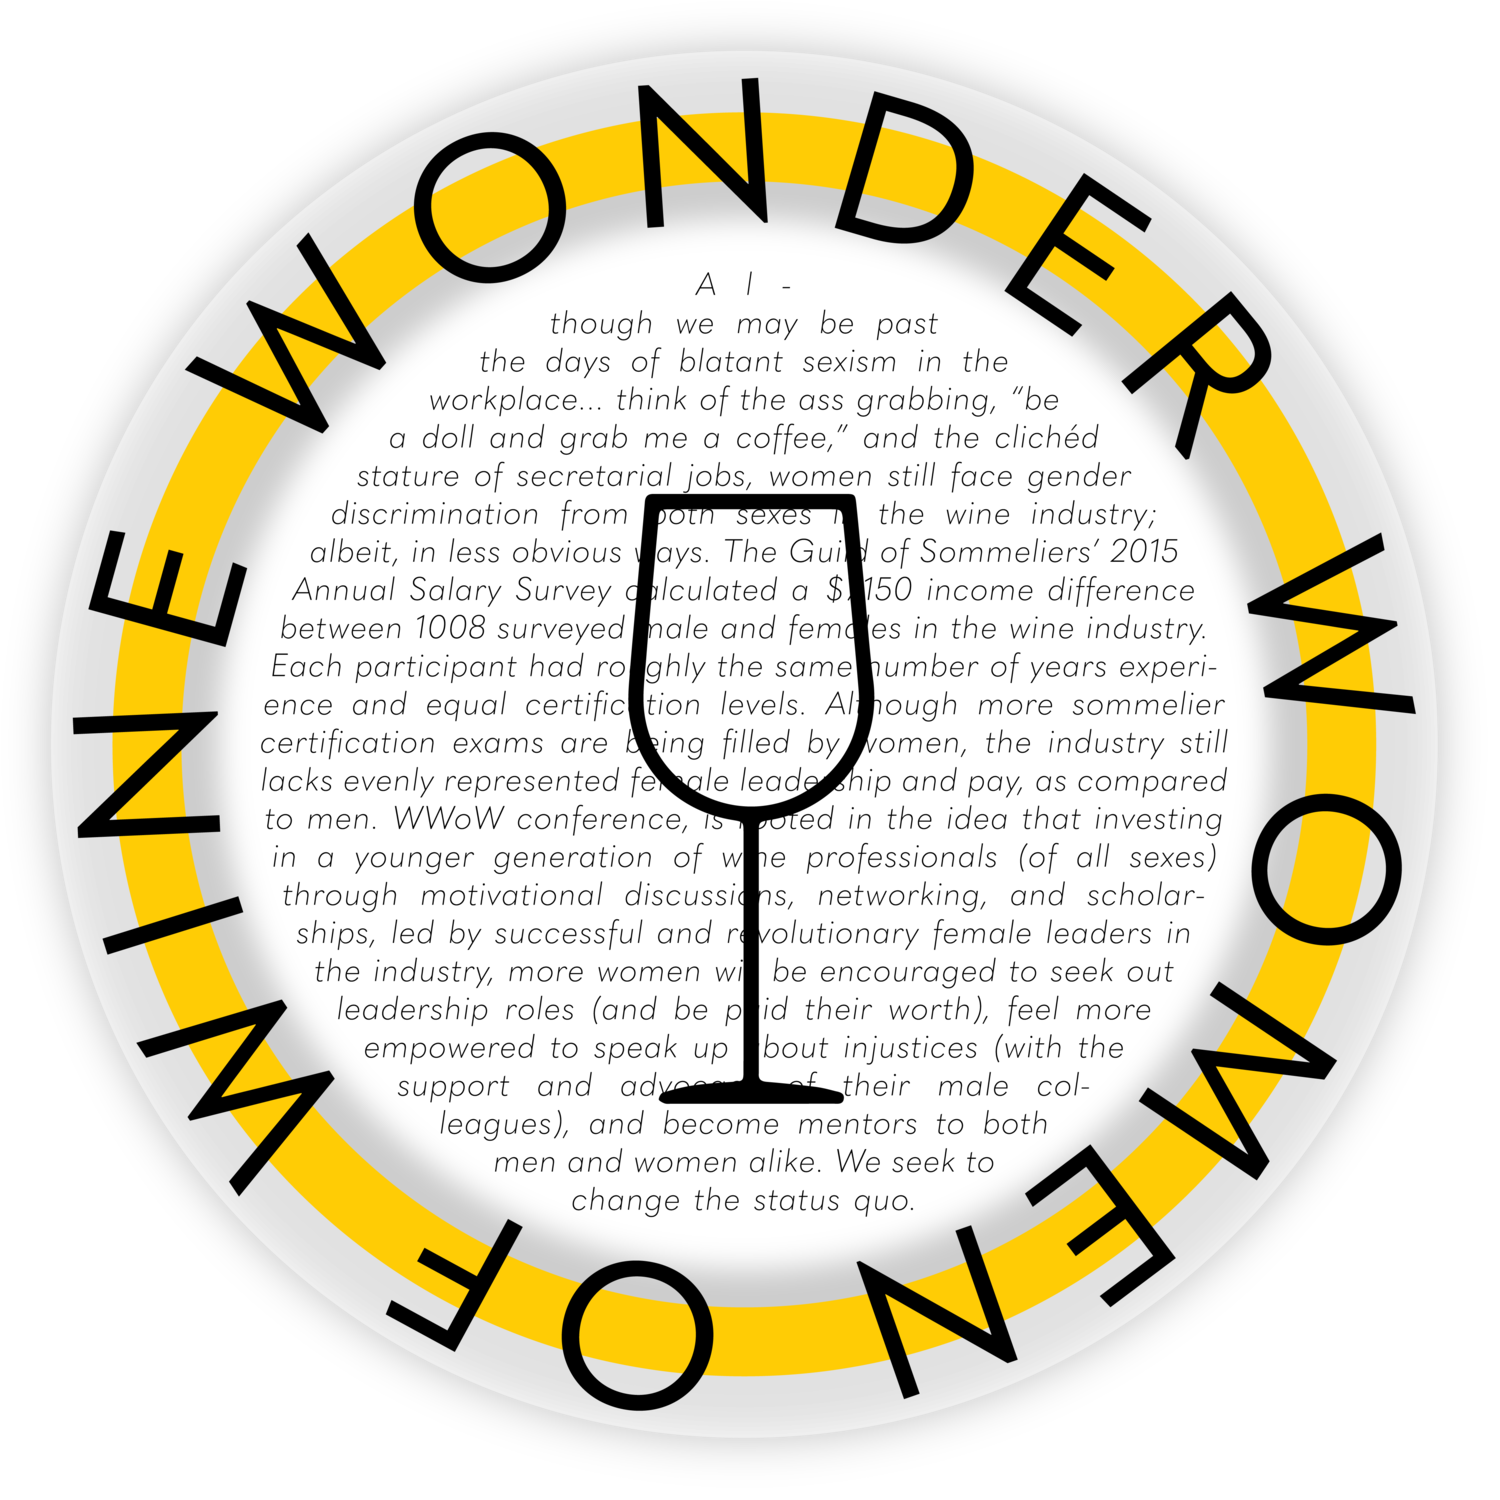 le fraghe women owned vineyard veneto italy